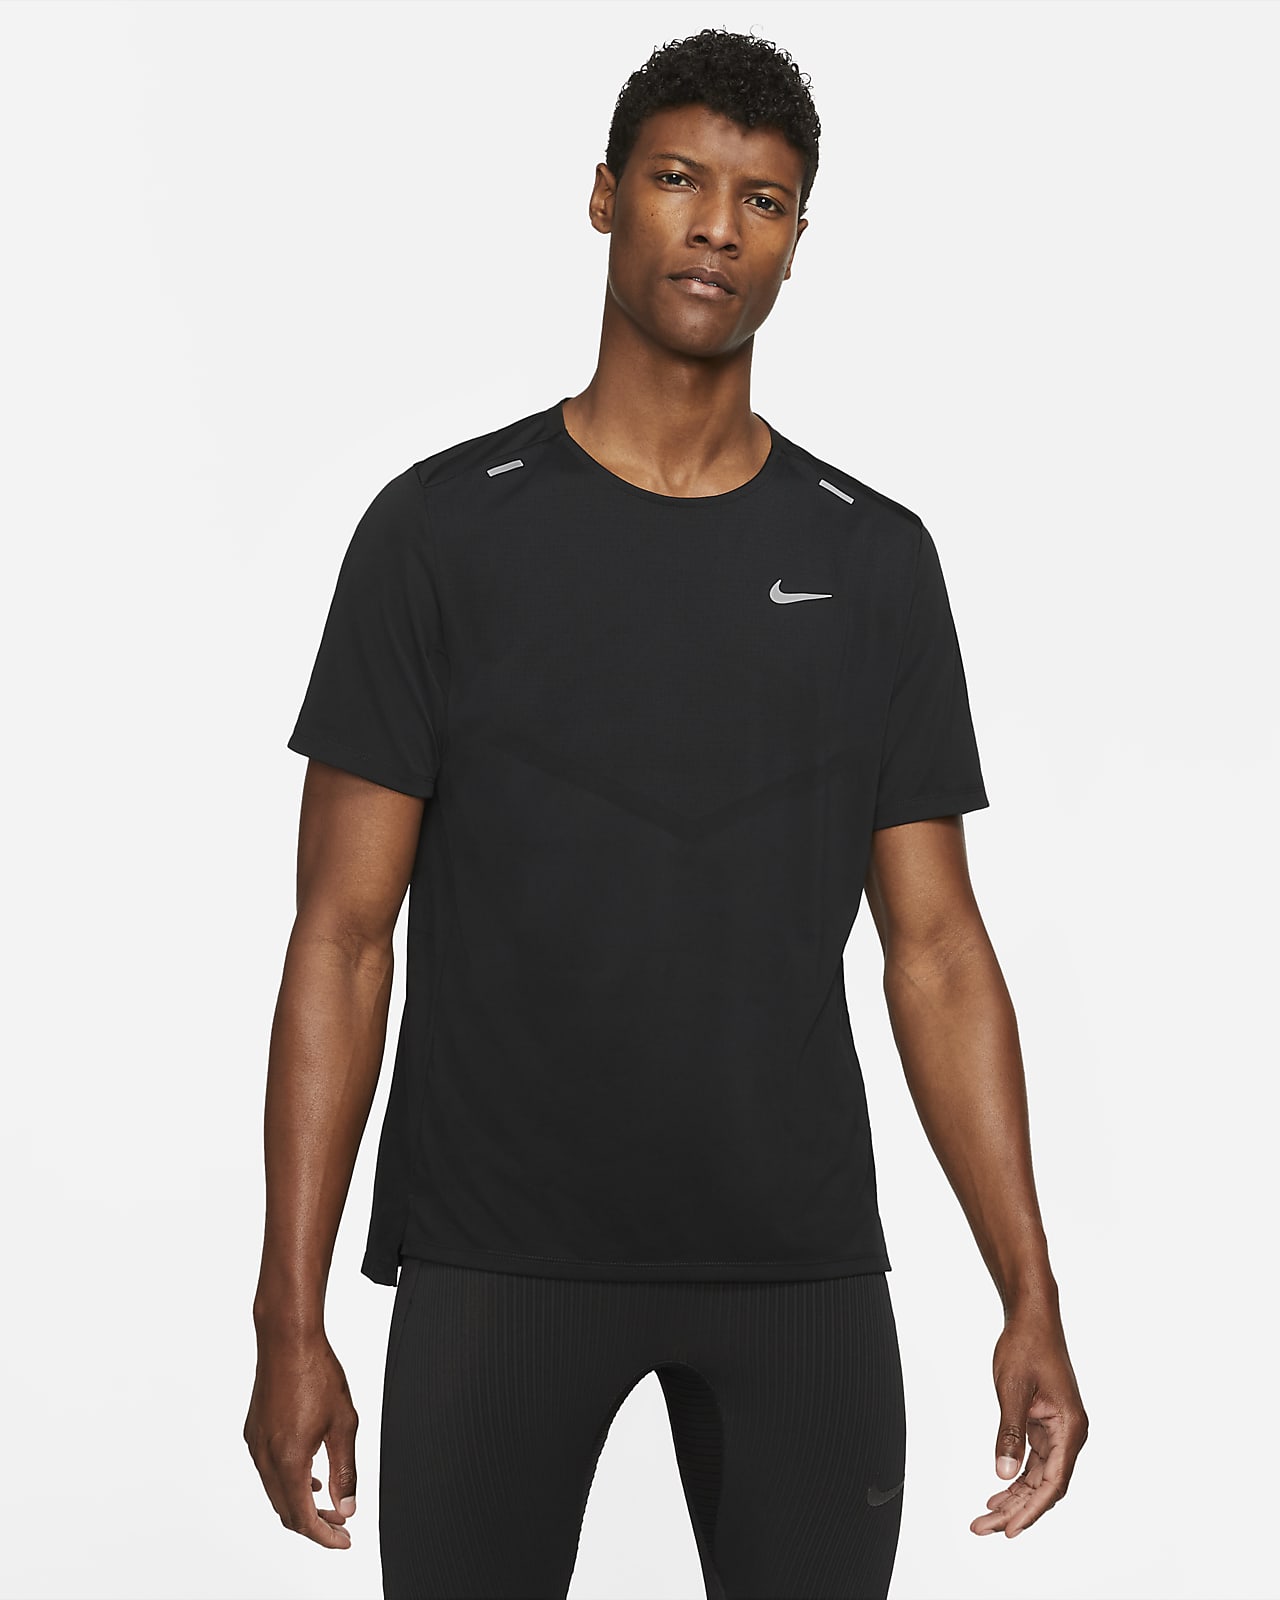 Nike Dri-FIT Rise 365 男子速干短袖跑步上衣